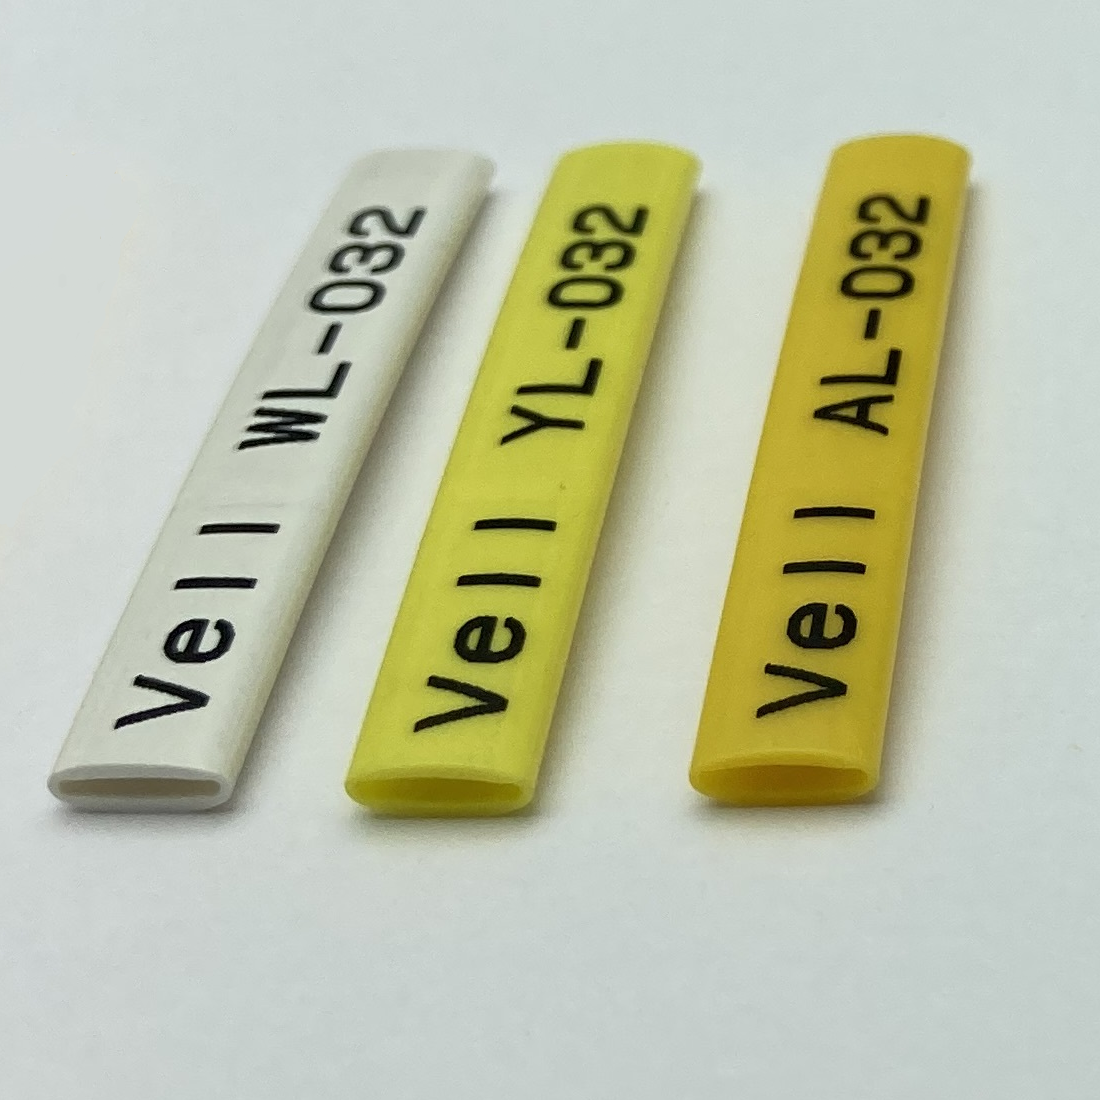 Фото Профиль ПВХ овальный Vell AL-032 для маркировки проводов, Ø 3,2 мм, 200 метров, янтарно-желтый, аналог Partex PO-05 (самозатухающий) {590395} (1)